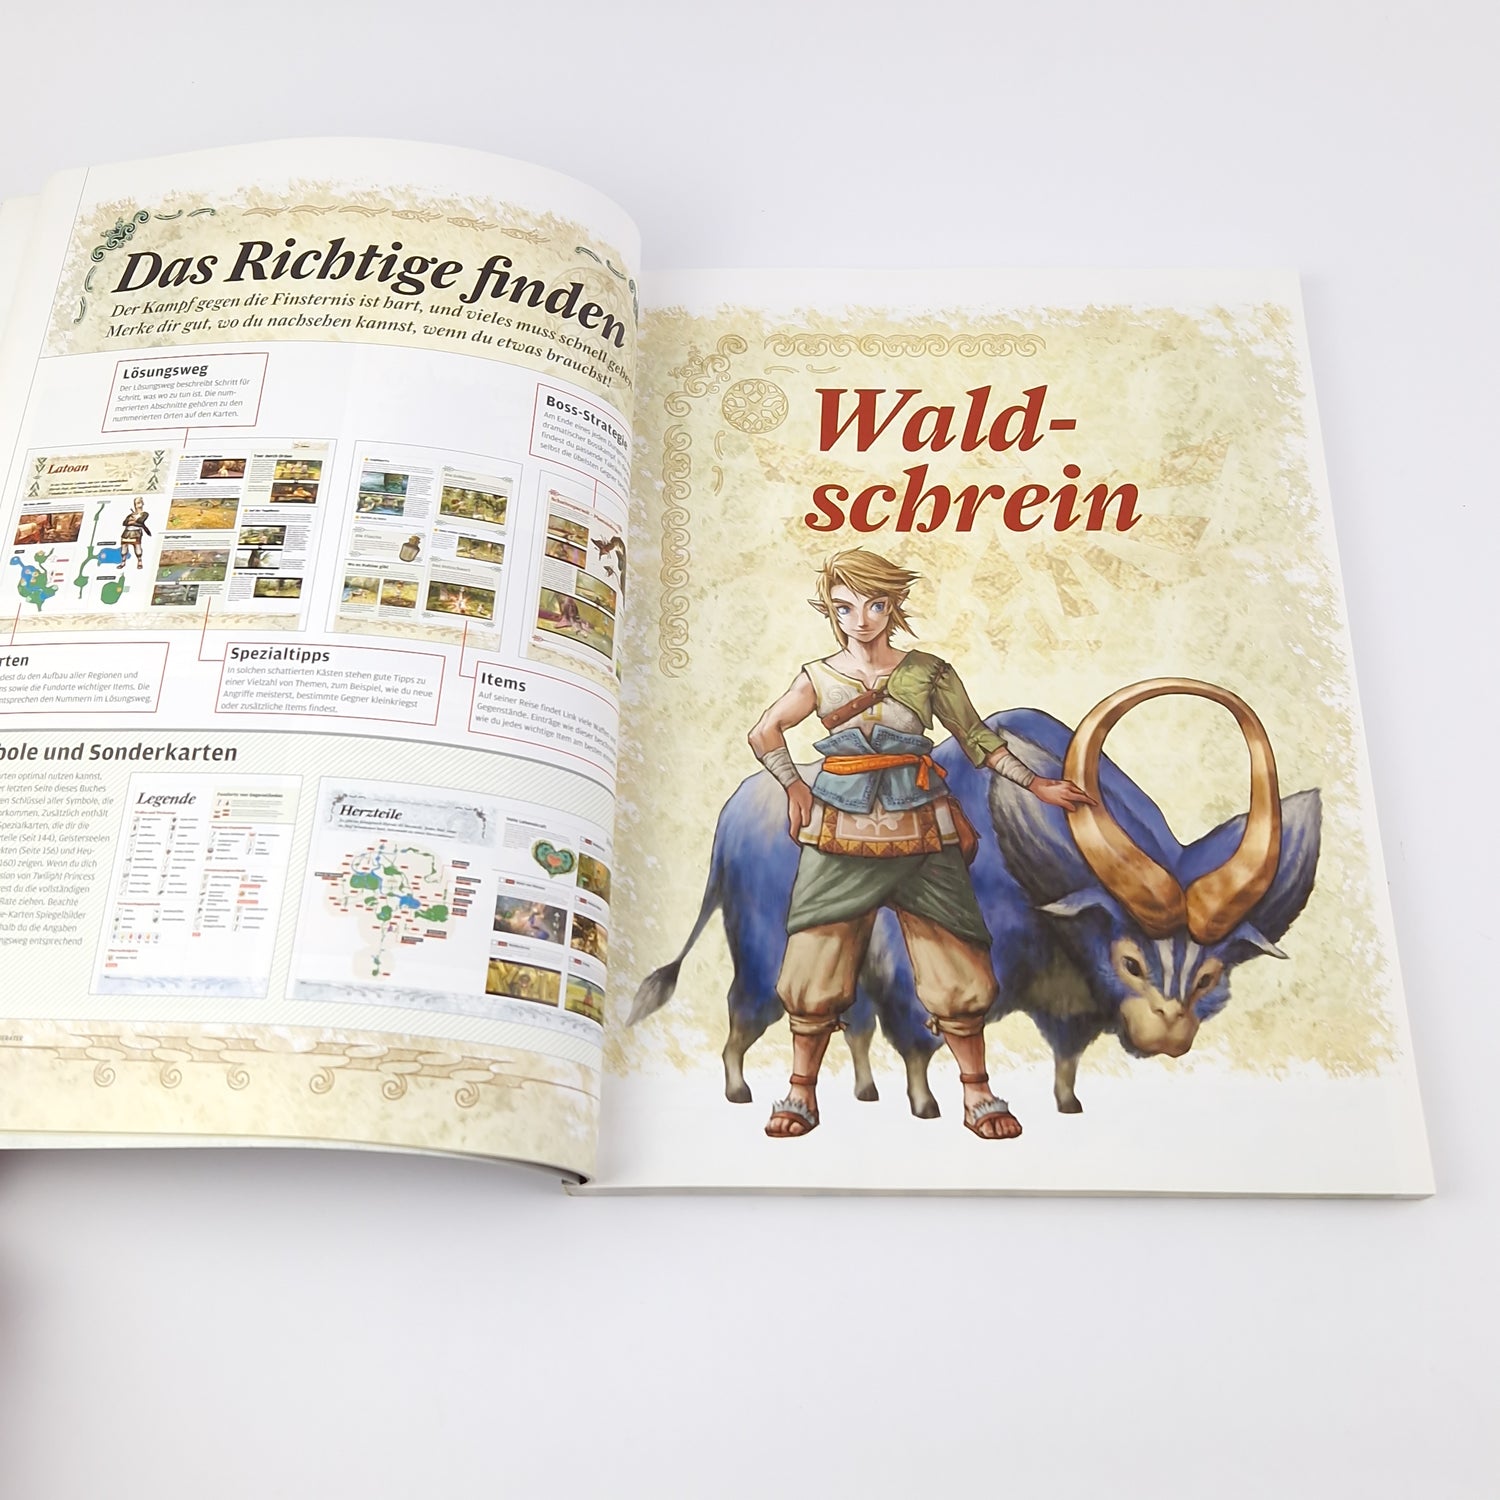 Offizieller Nintendo Wii Spieleberater zu Zelda Twilight Princess - Guide Book